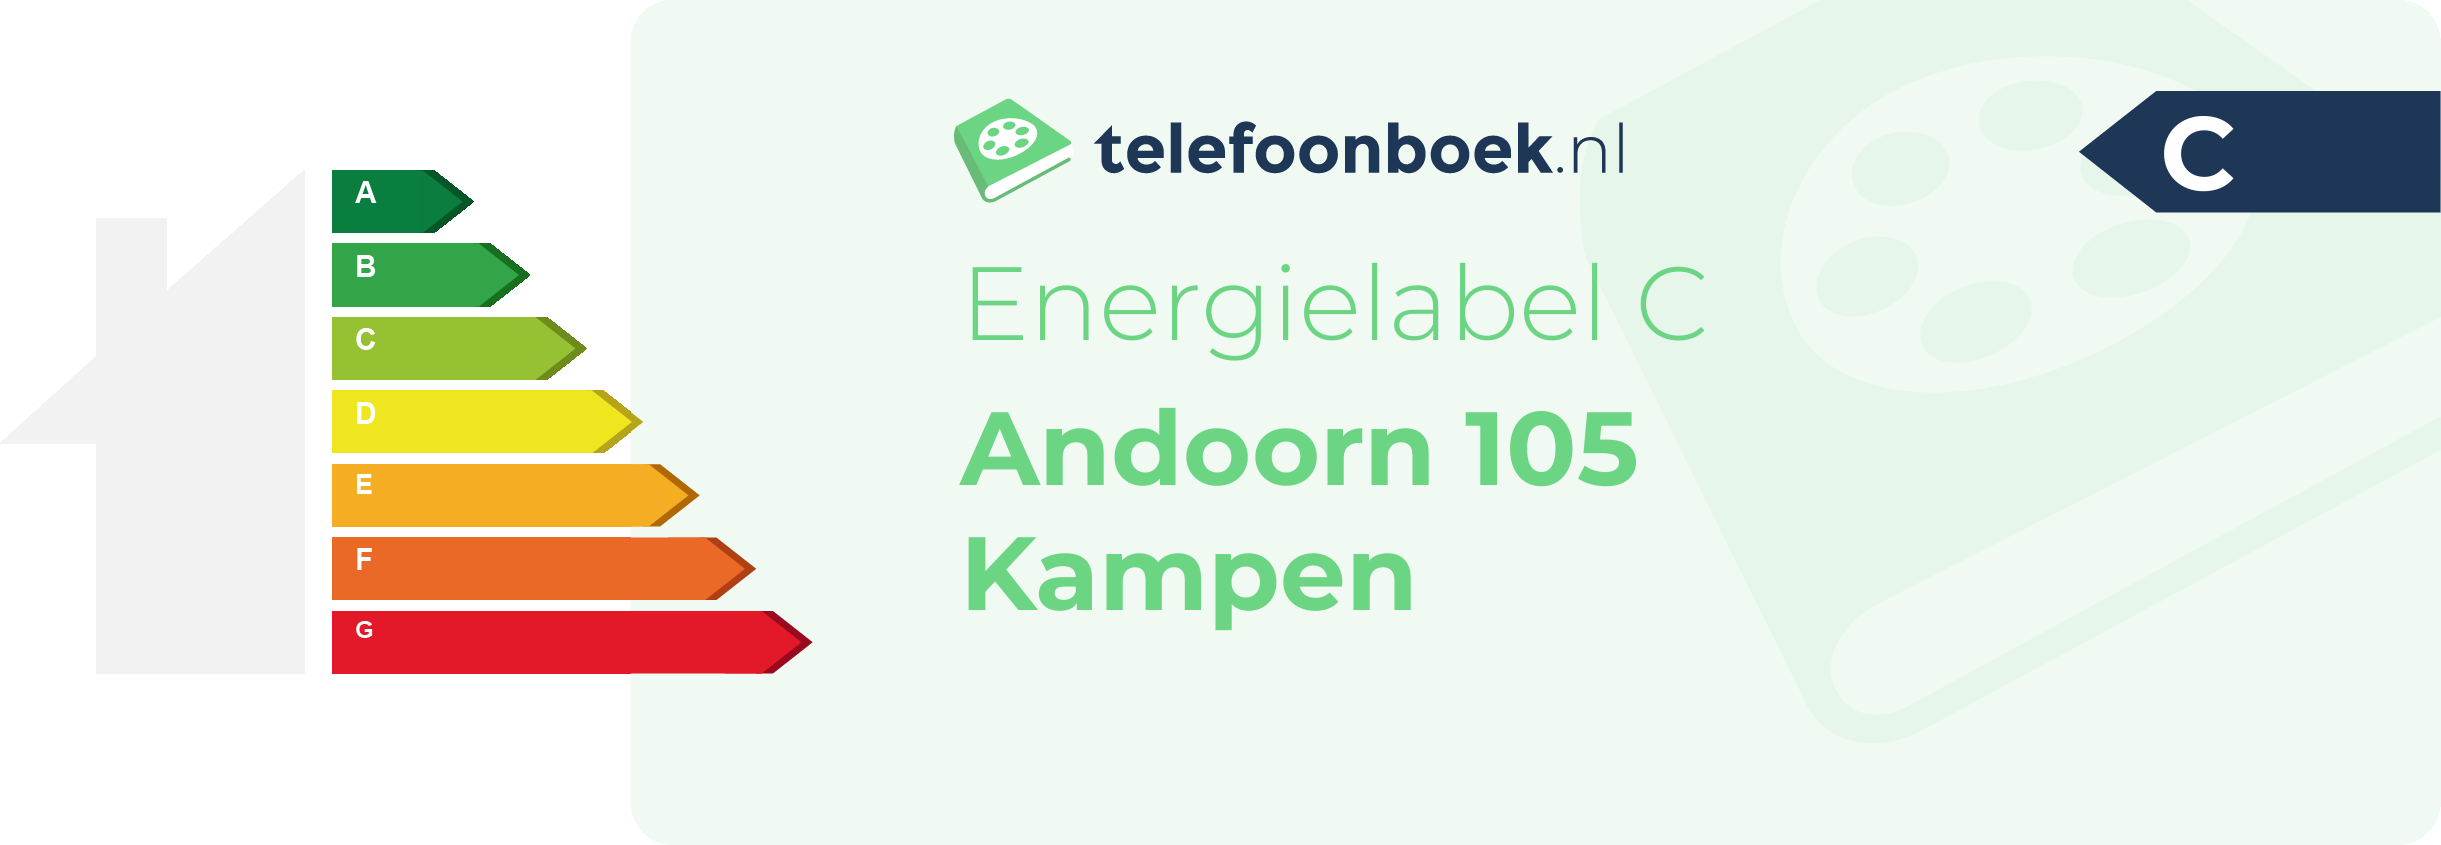 Energielabel Andoorn 105 Kampen